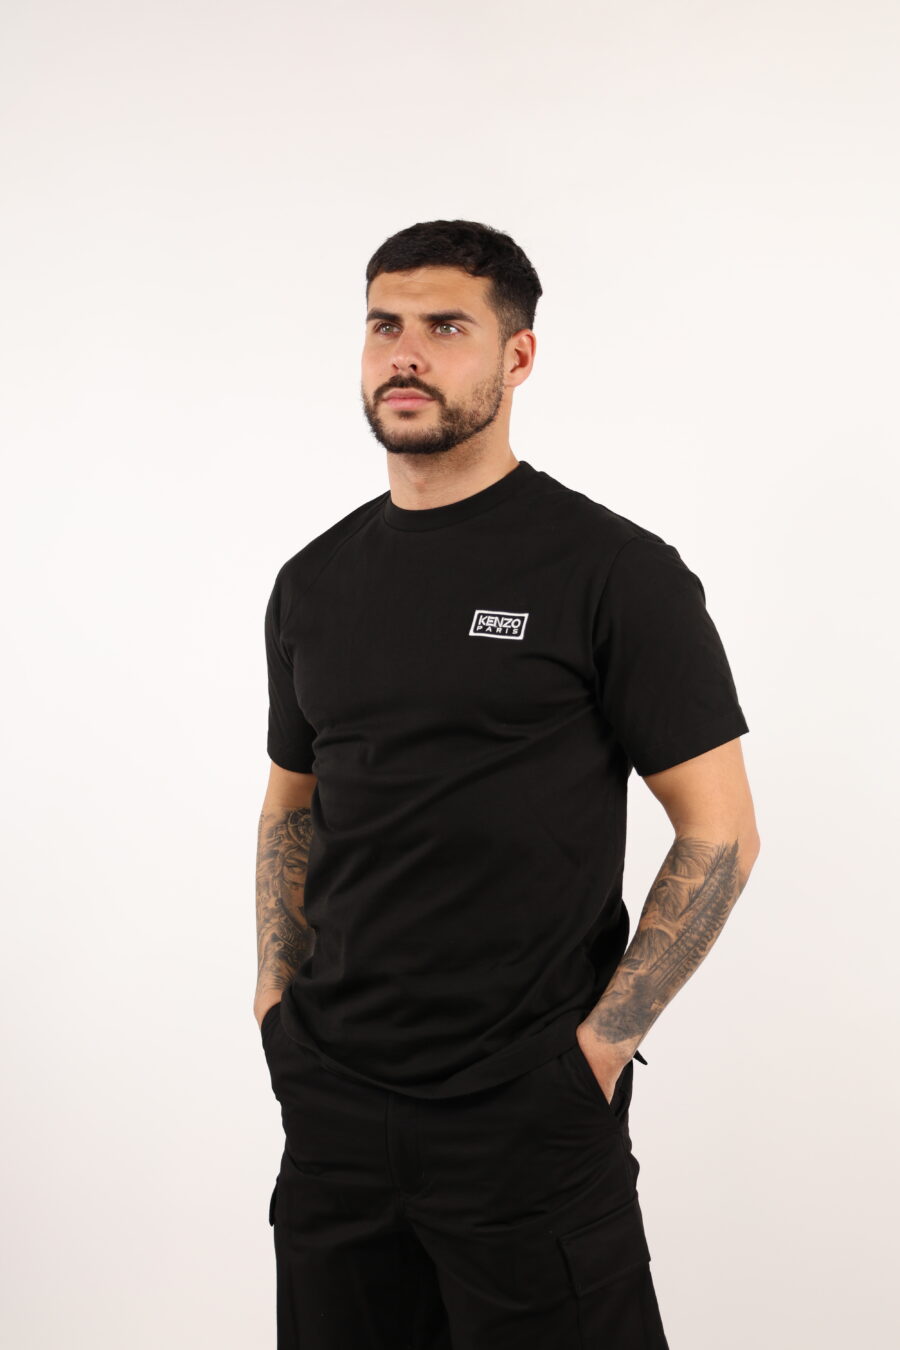 Camiseta negra con minilogo "KP classic" - 108990